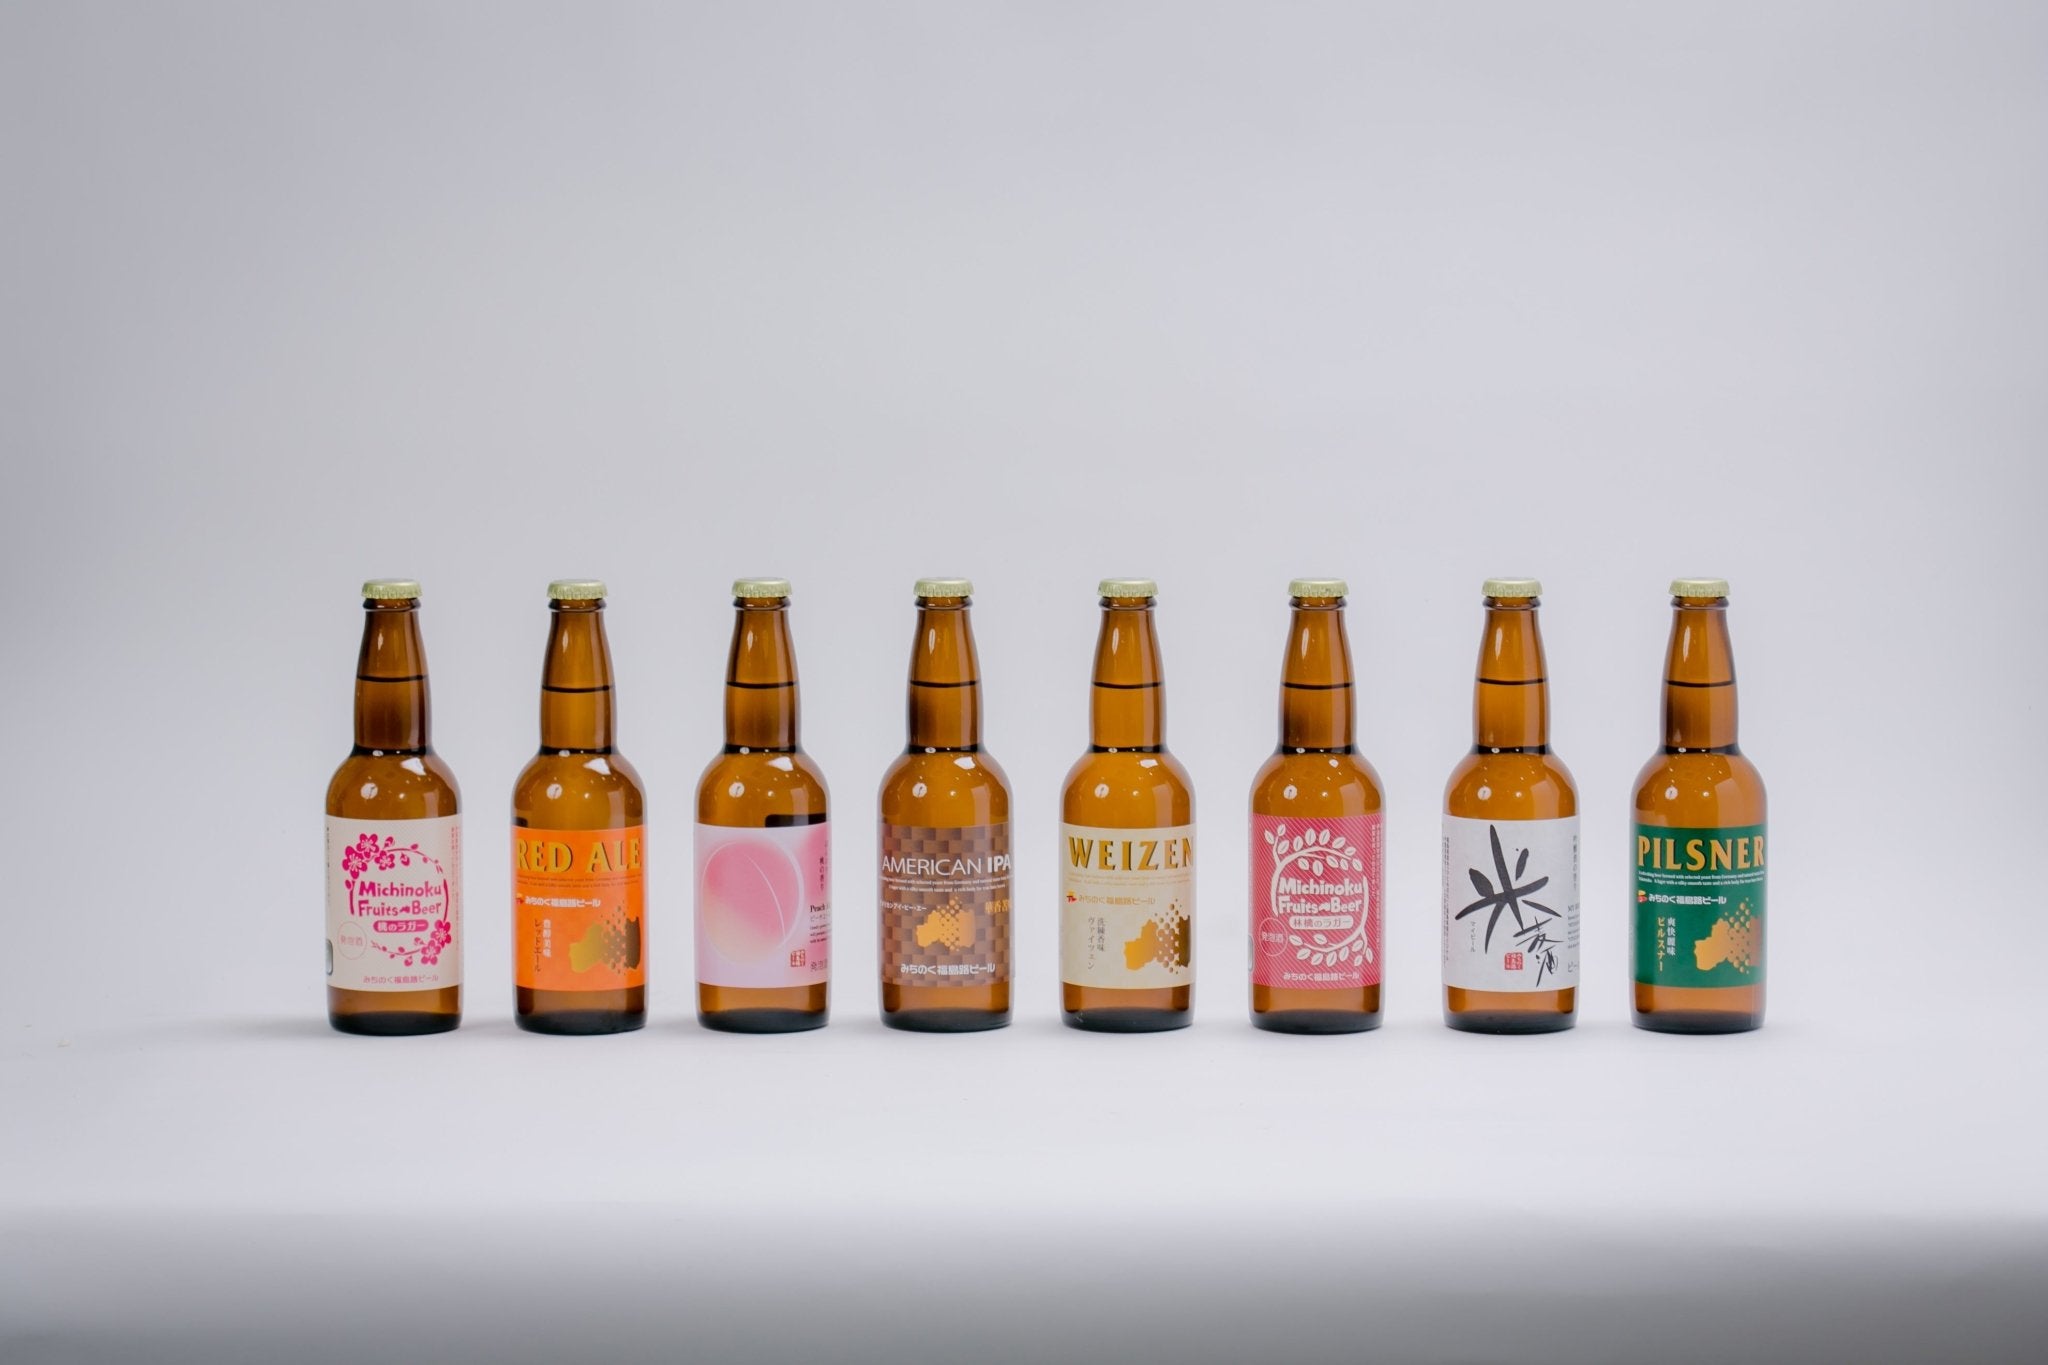 みちのく福島路ビール飲み比べ8本セット - ふくしま市場｜福島県産品オンラインストア